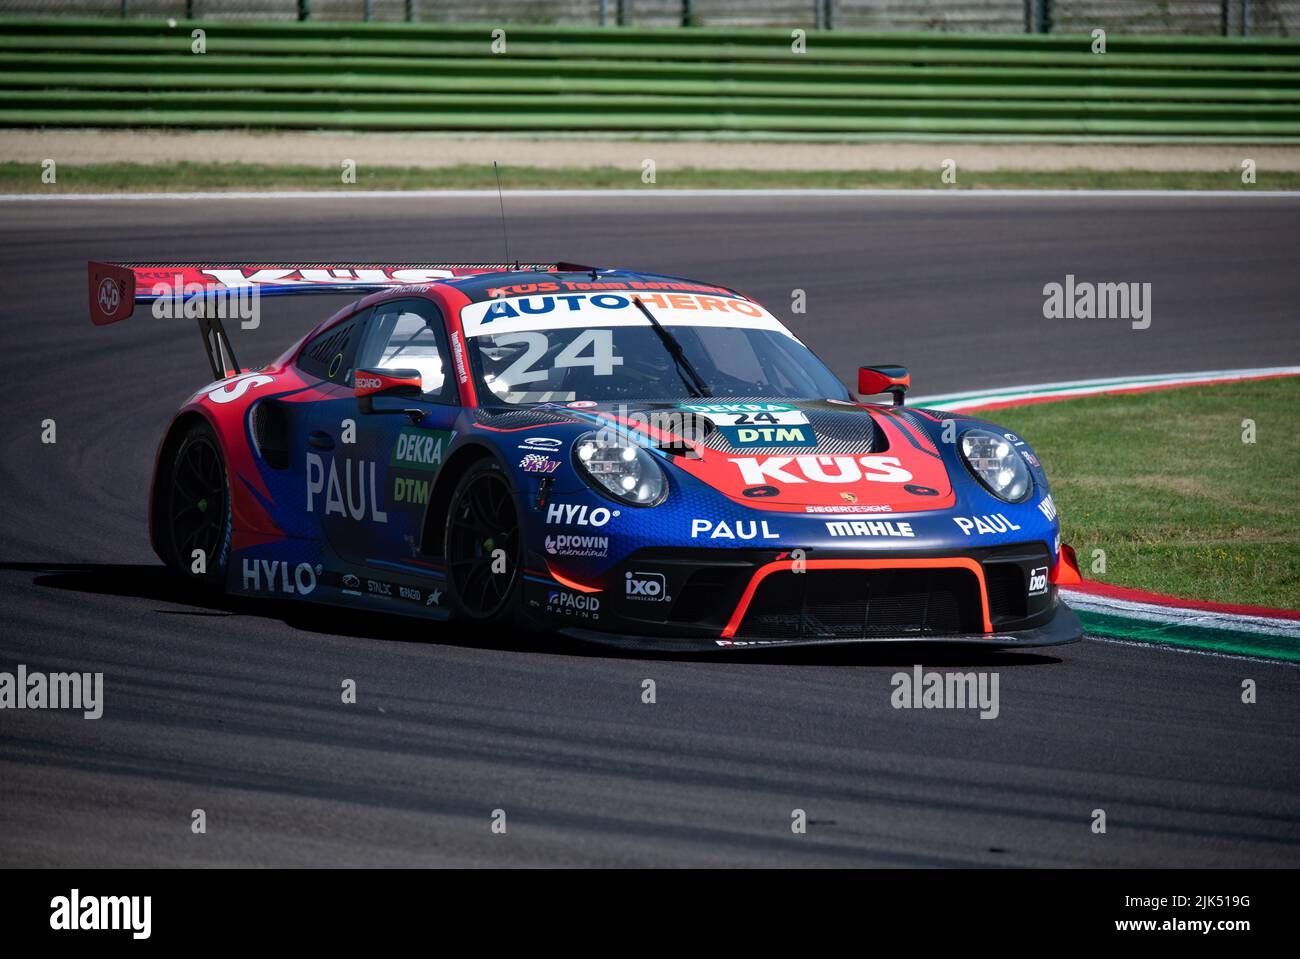 Porsche 911 GT3 de carreras de super coche de acción rápida en pista de asfalto. Imola, Italia, junio de 18 2022. DTM Foto de stock